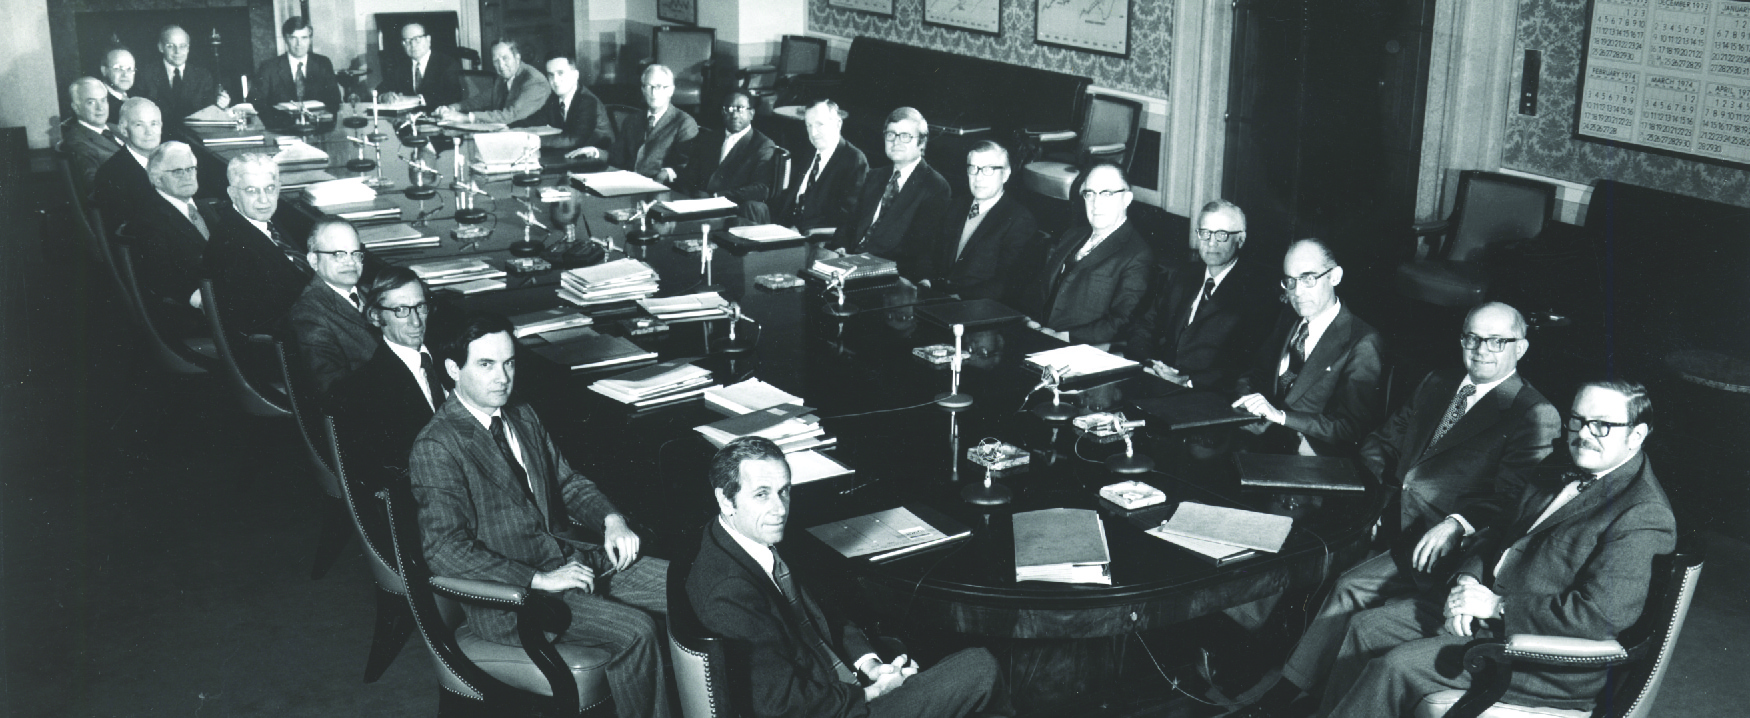 تُظهر هذه الصورة ثلاثة وعشرين رجلاً أبيض ورجلًا أسود يرتدي بدلات يجلسون حول طاولة كبيرة على طراز غرفة الاجتماعات.